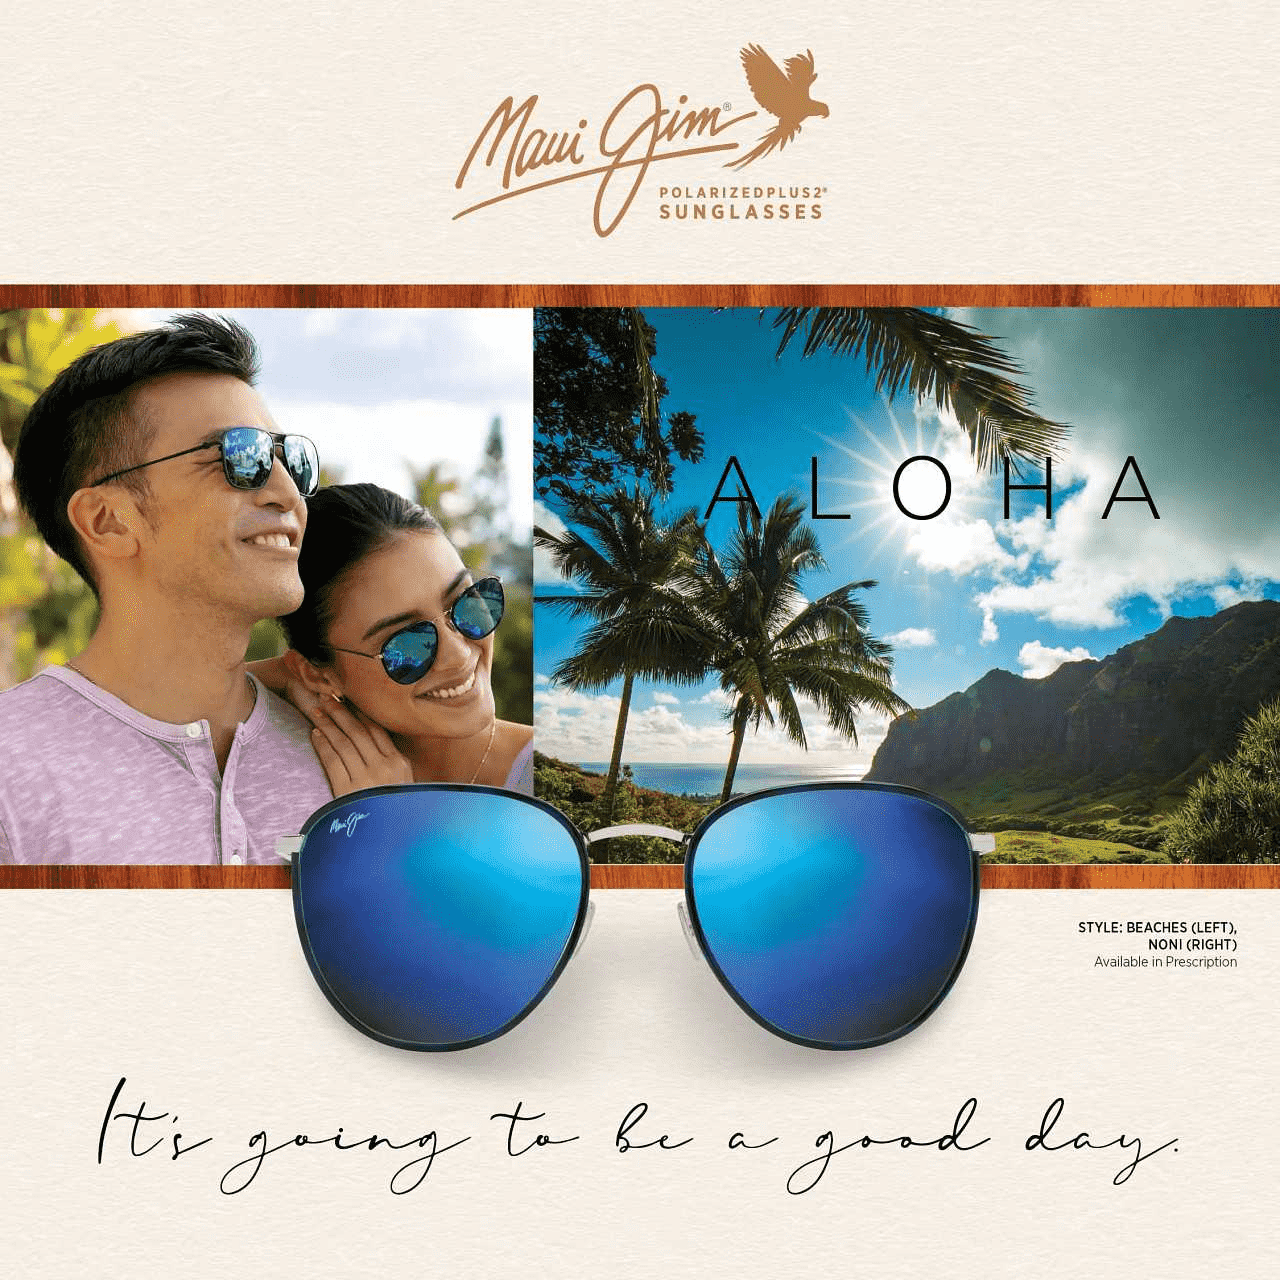 Maui Jim sunglasses media kit blue